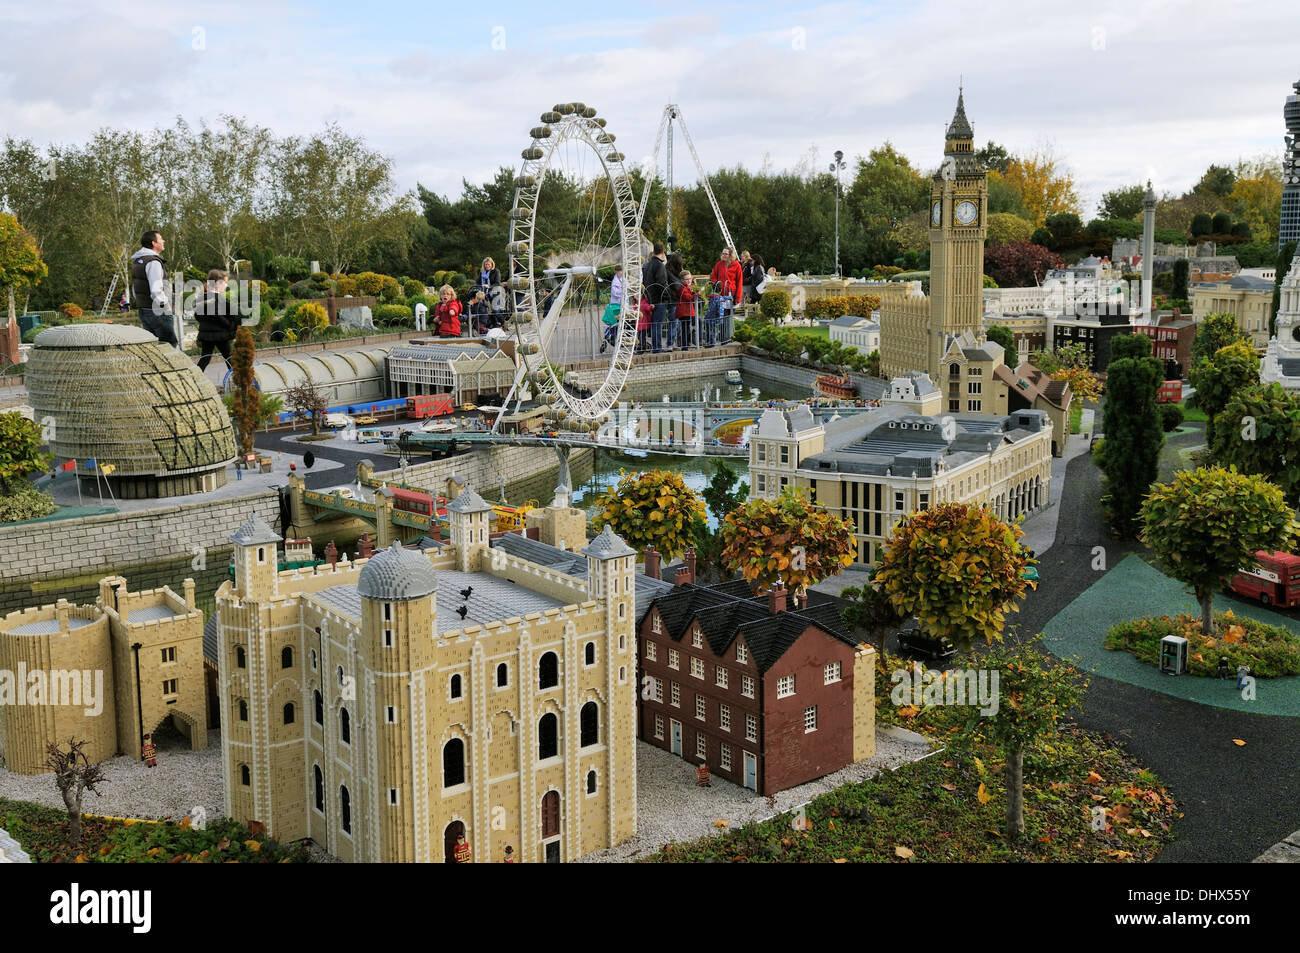 Miniland at Legoland, Windsor, UK Stock Photo